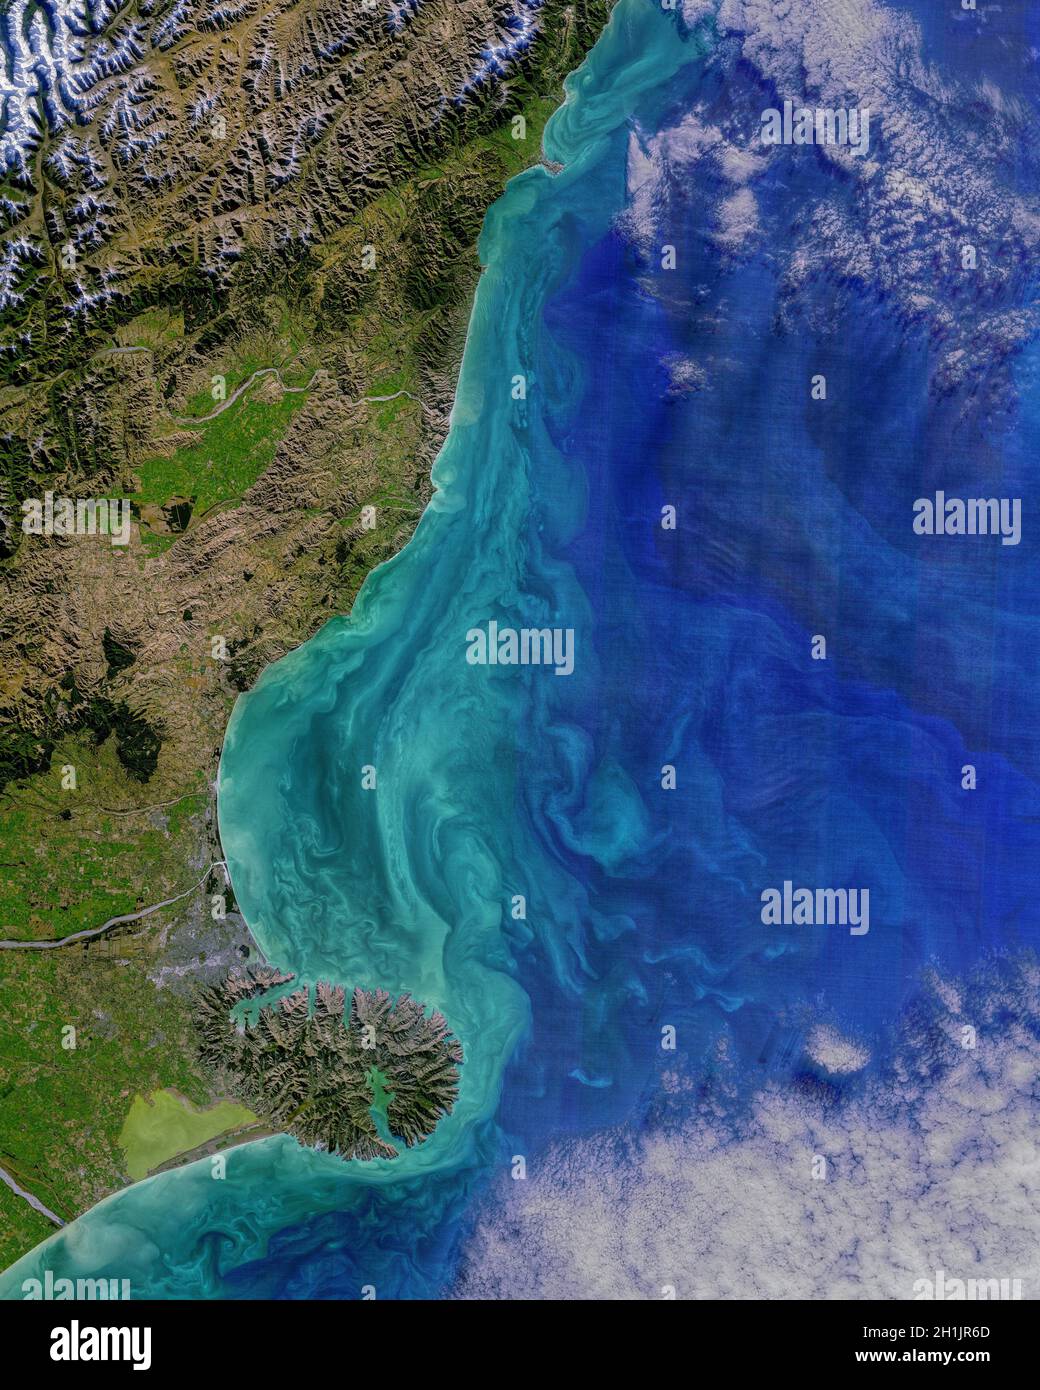 La regione costiera di Canterbury dell'Isola del Sud, Nuova Zelanda. Dalla Penisola di Kaikoura (nord) alla Penisola di Banks (sud). Immagine acquisita il 19 maggio 2021, con l'Operational Land Imager (oli) sul satellite Landsat 8. Una versione ottimizzata e potenziata digitalmente di un'immagine NASA / credito NASA Foto Stock